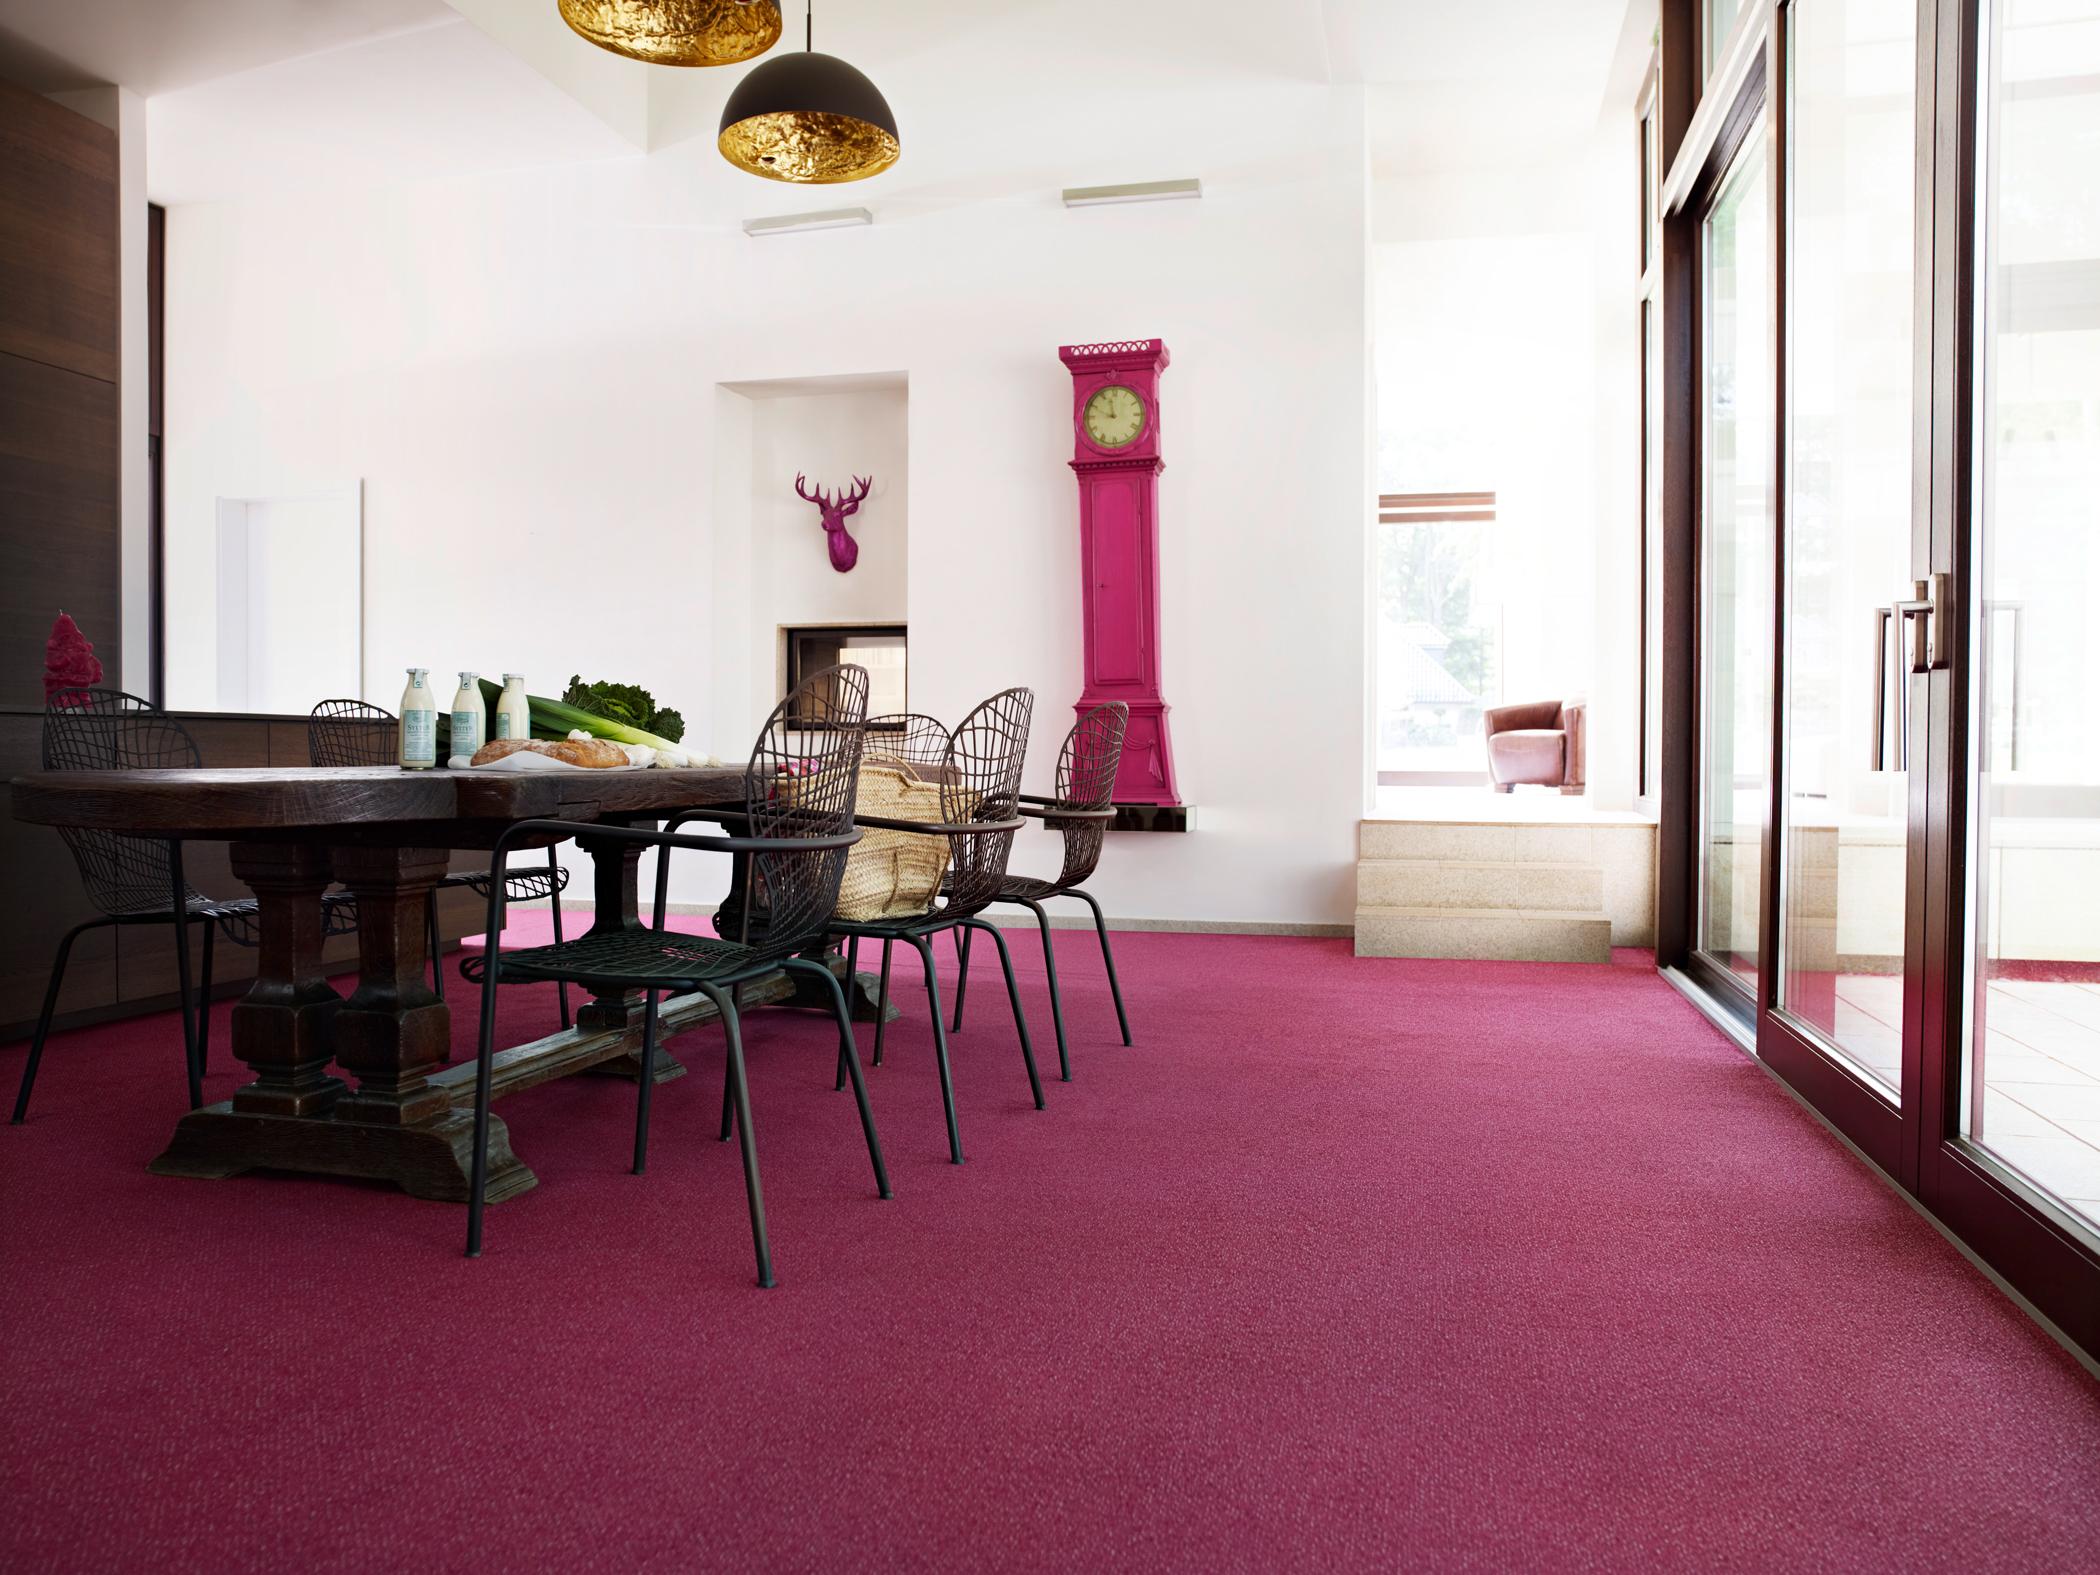 Stylische Standuhr in Pink #geweih #teppich #esstisch #pinkfarbenerteppich #standuhr ©Bernd Opitz für Vorwerk